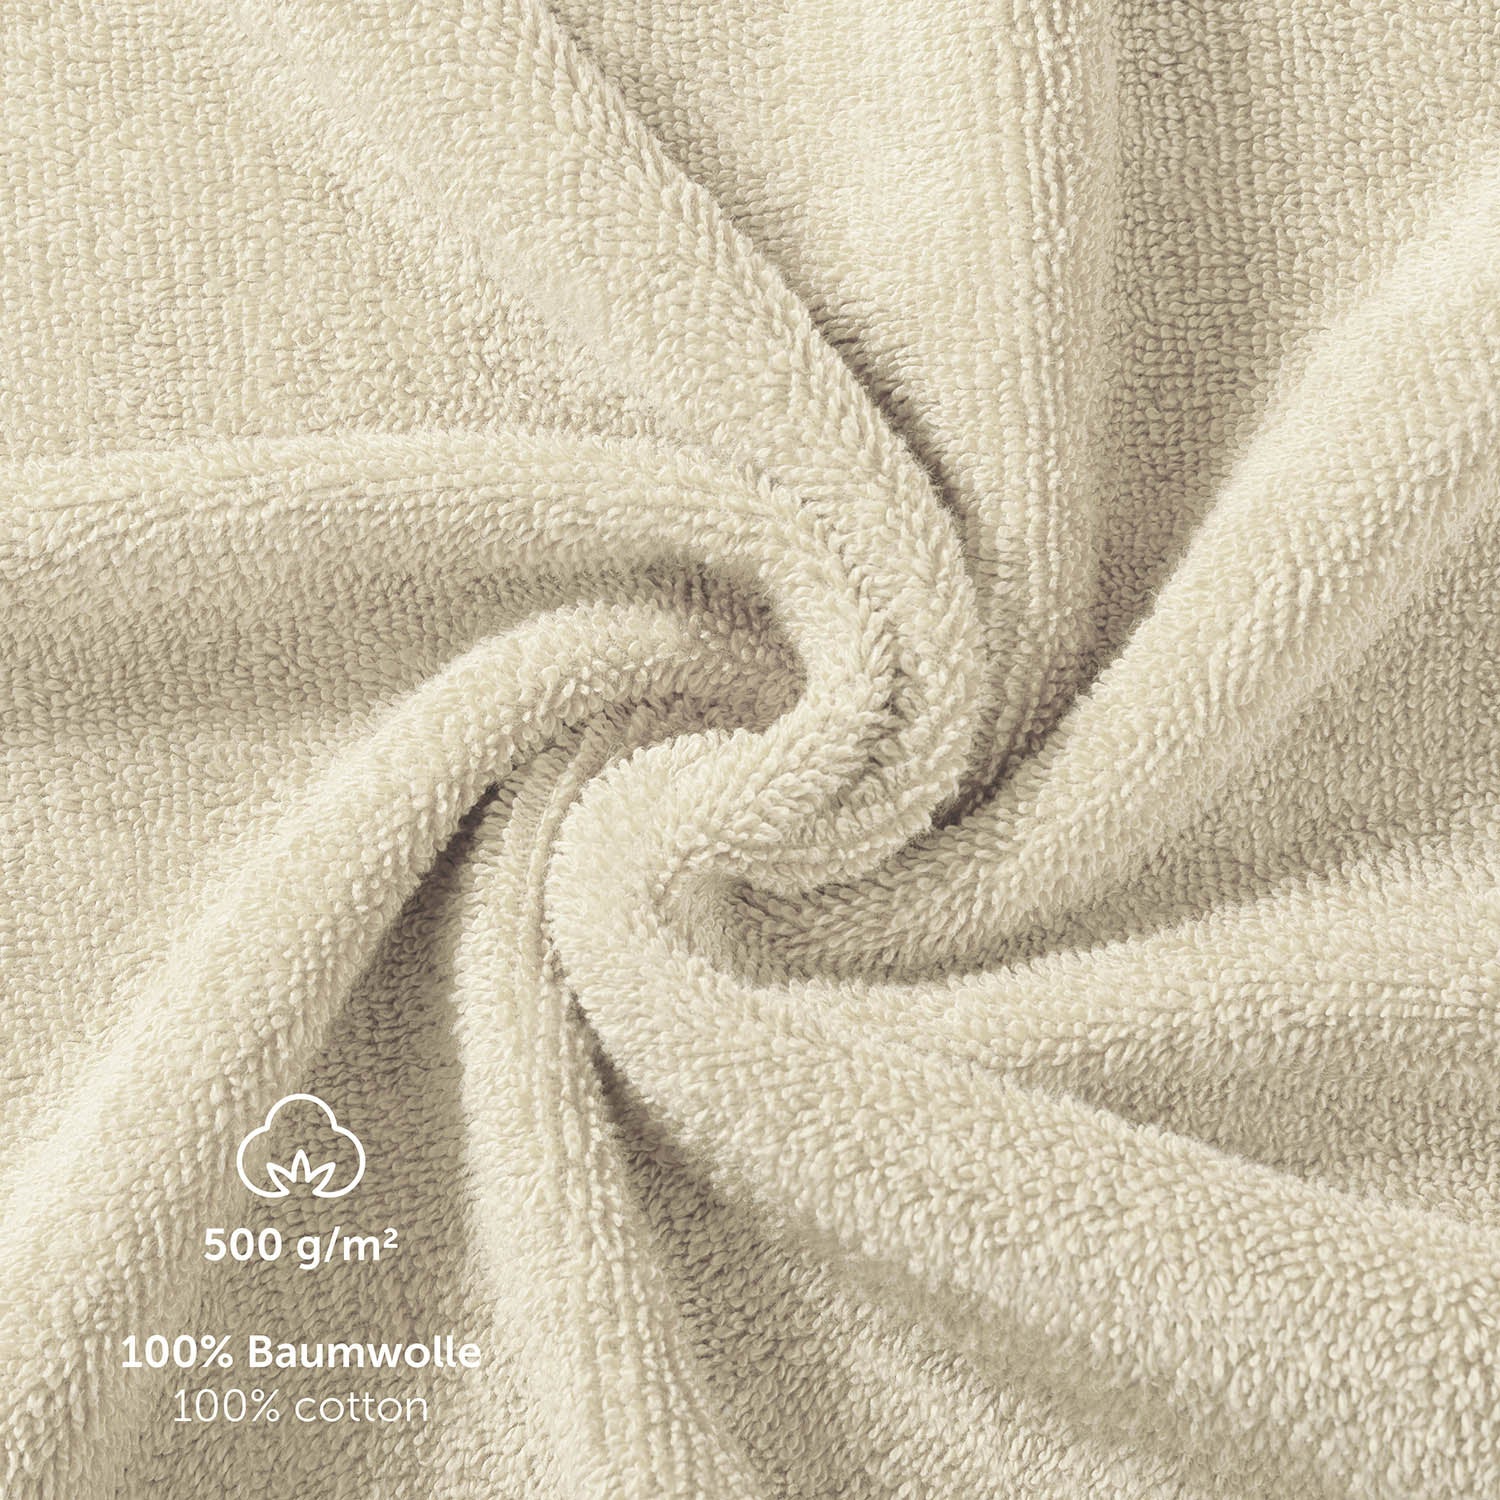 Detailaufnahme der Textur eines Handtuchs mit Angaben zu Material und Gewicht in Weiß 500 g/m 100% Baumwolle 100% cotton